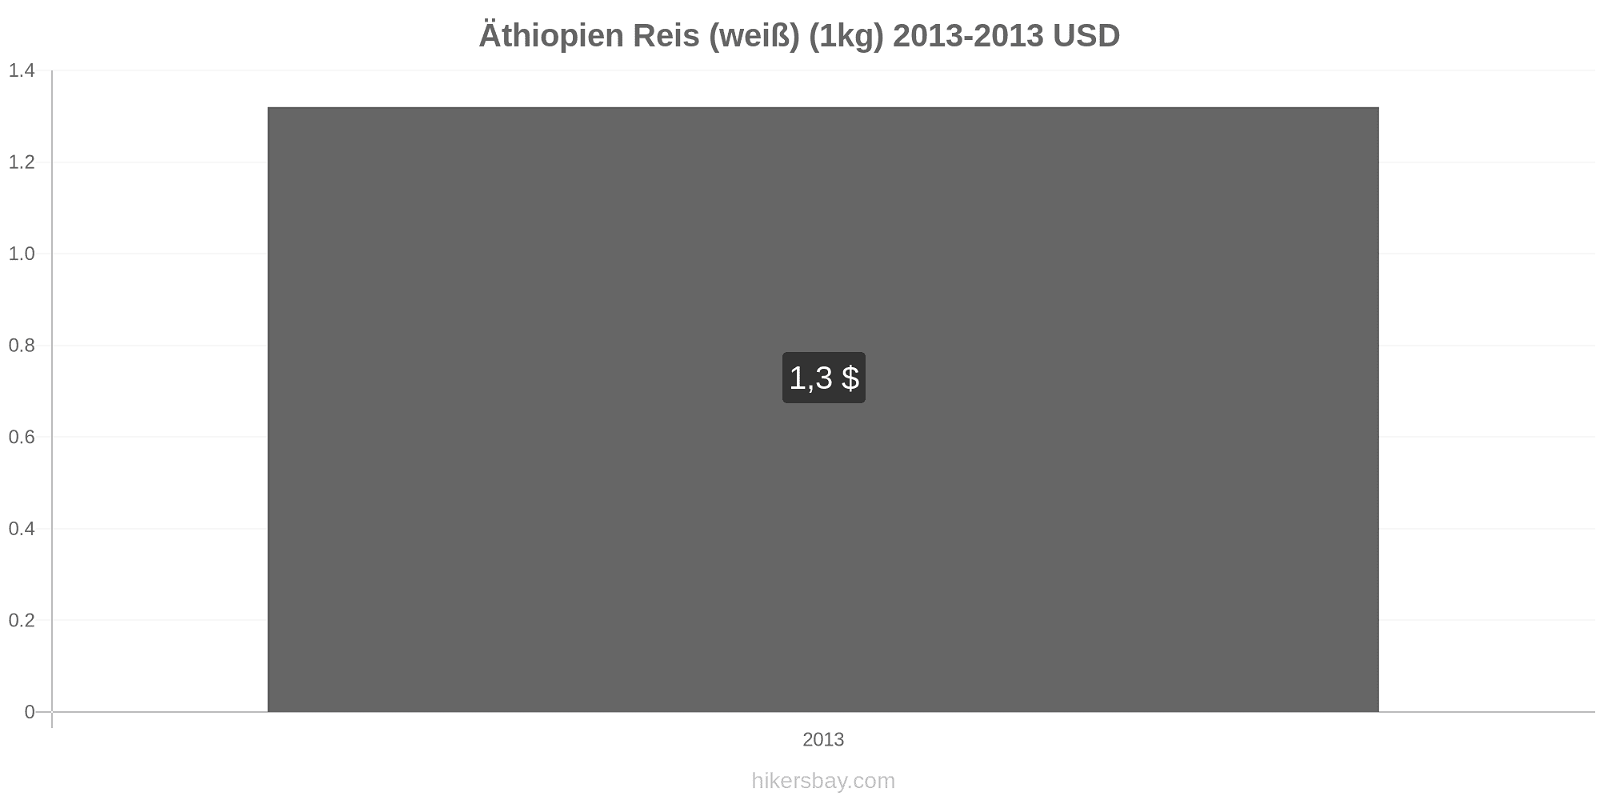 Äthiopien Preisänderungen Reis (weiß) (1kg) hikersbay.com